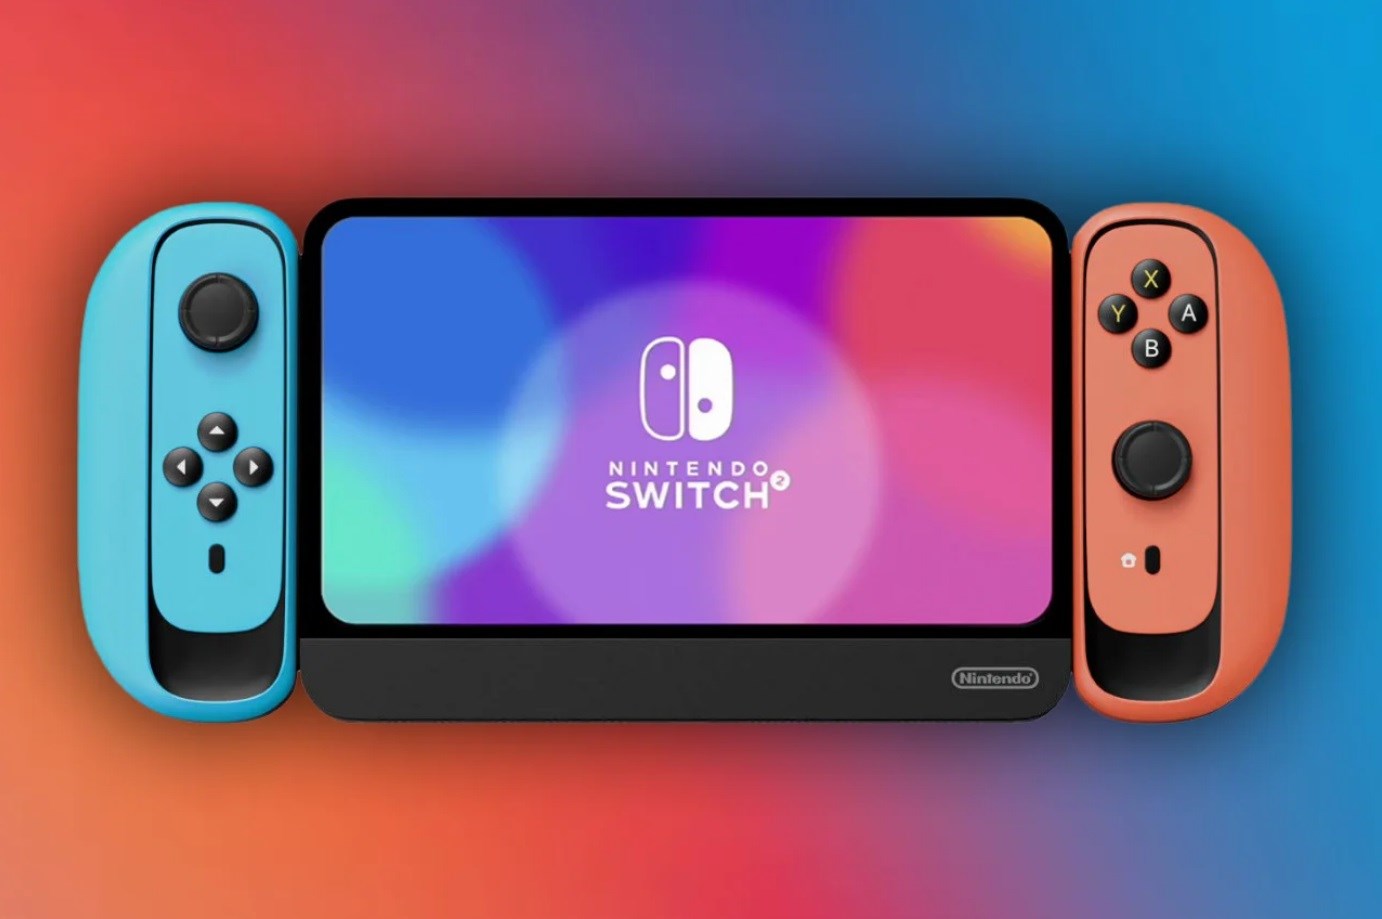 Nintendo Switch 2’nin performansı ve fiyatı detaylanıyor